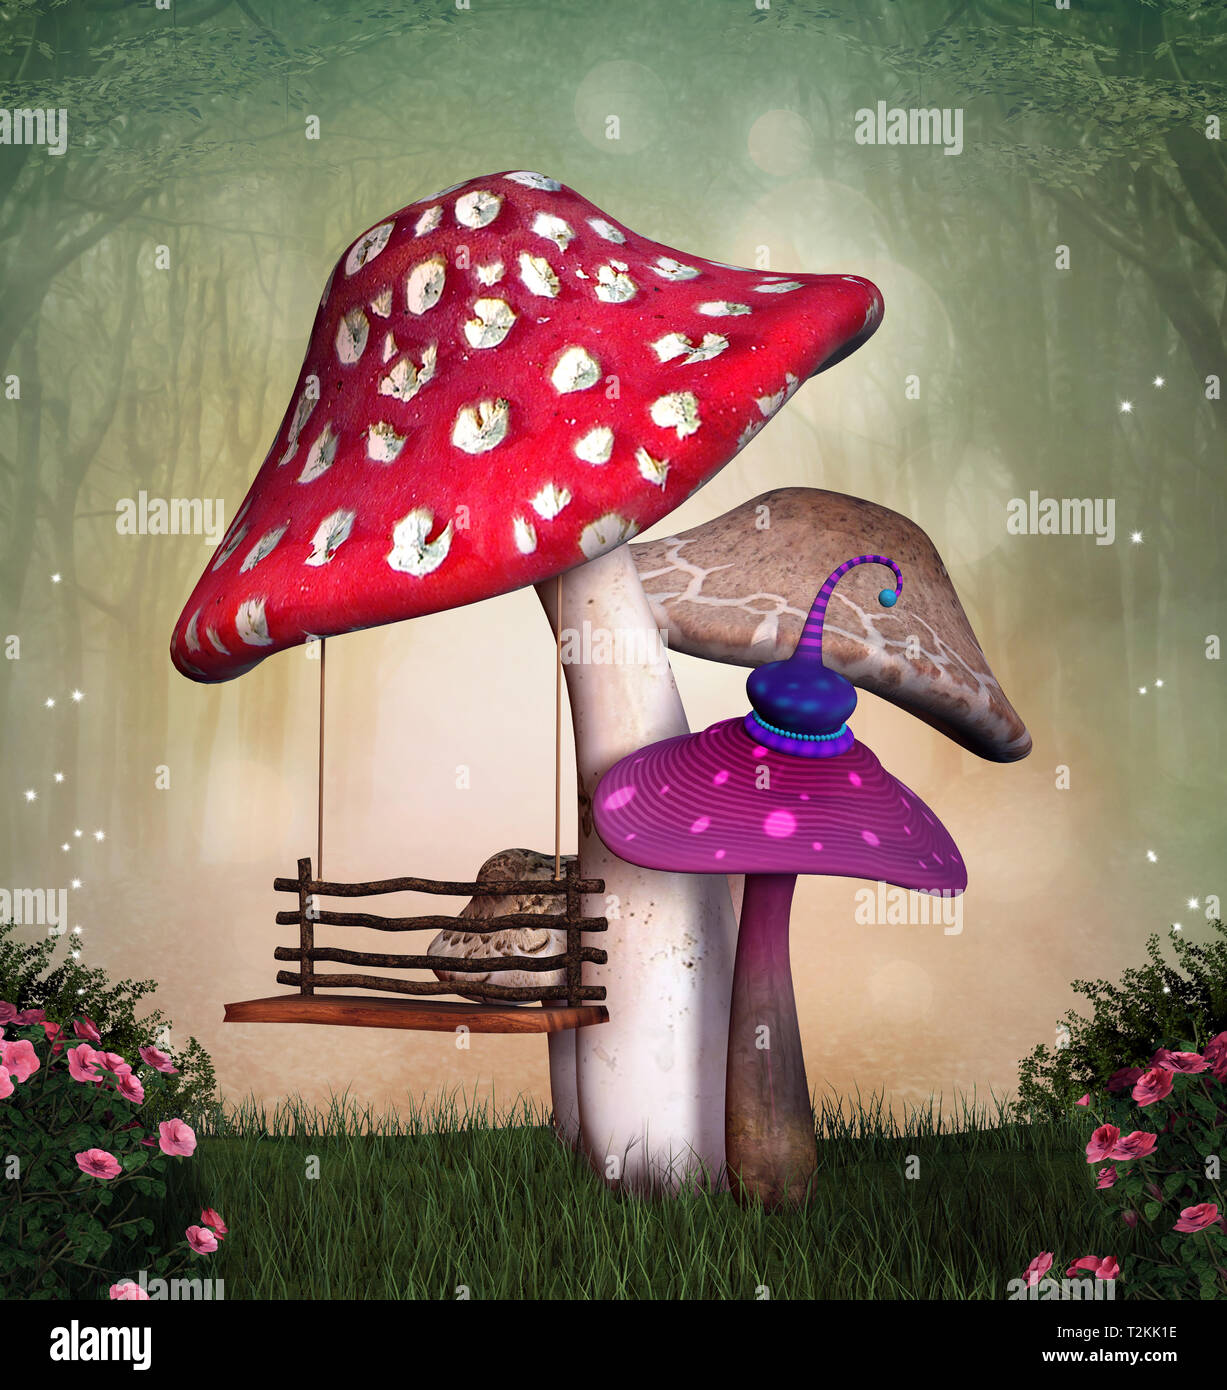 Jardin des merveilles avec des champignons et une balançoire Banque D'Images